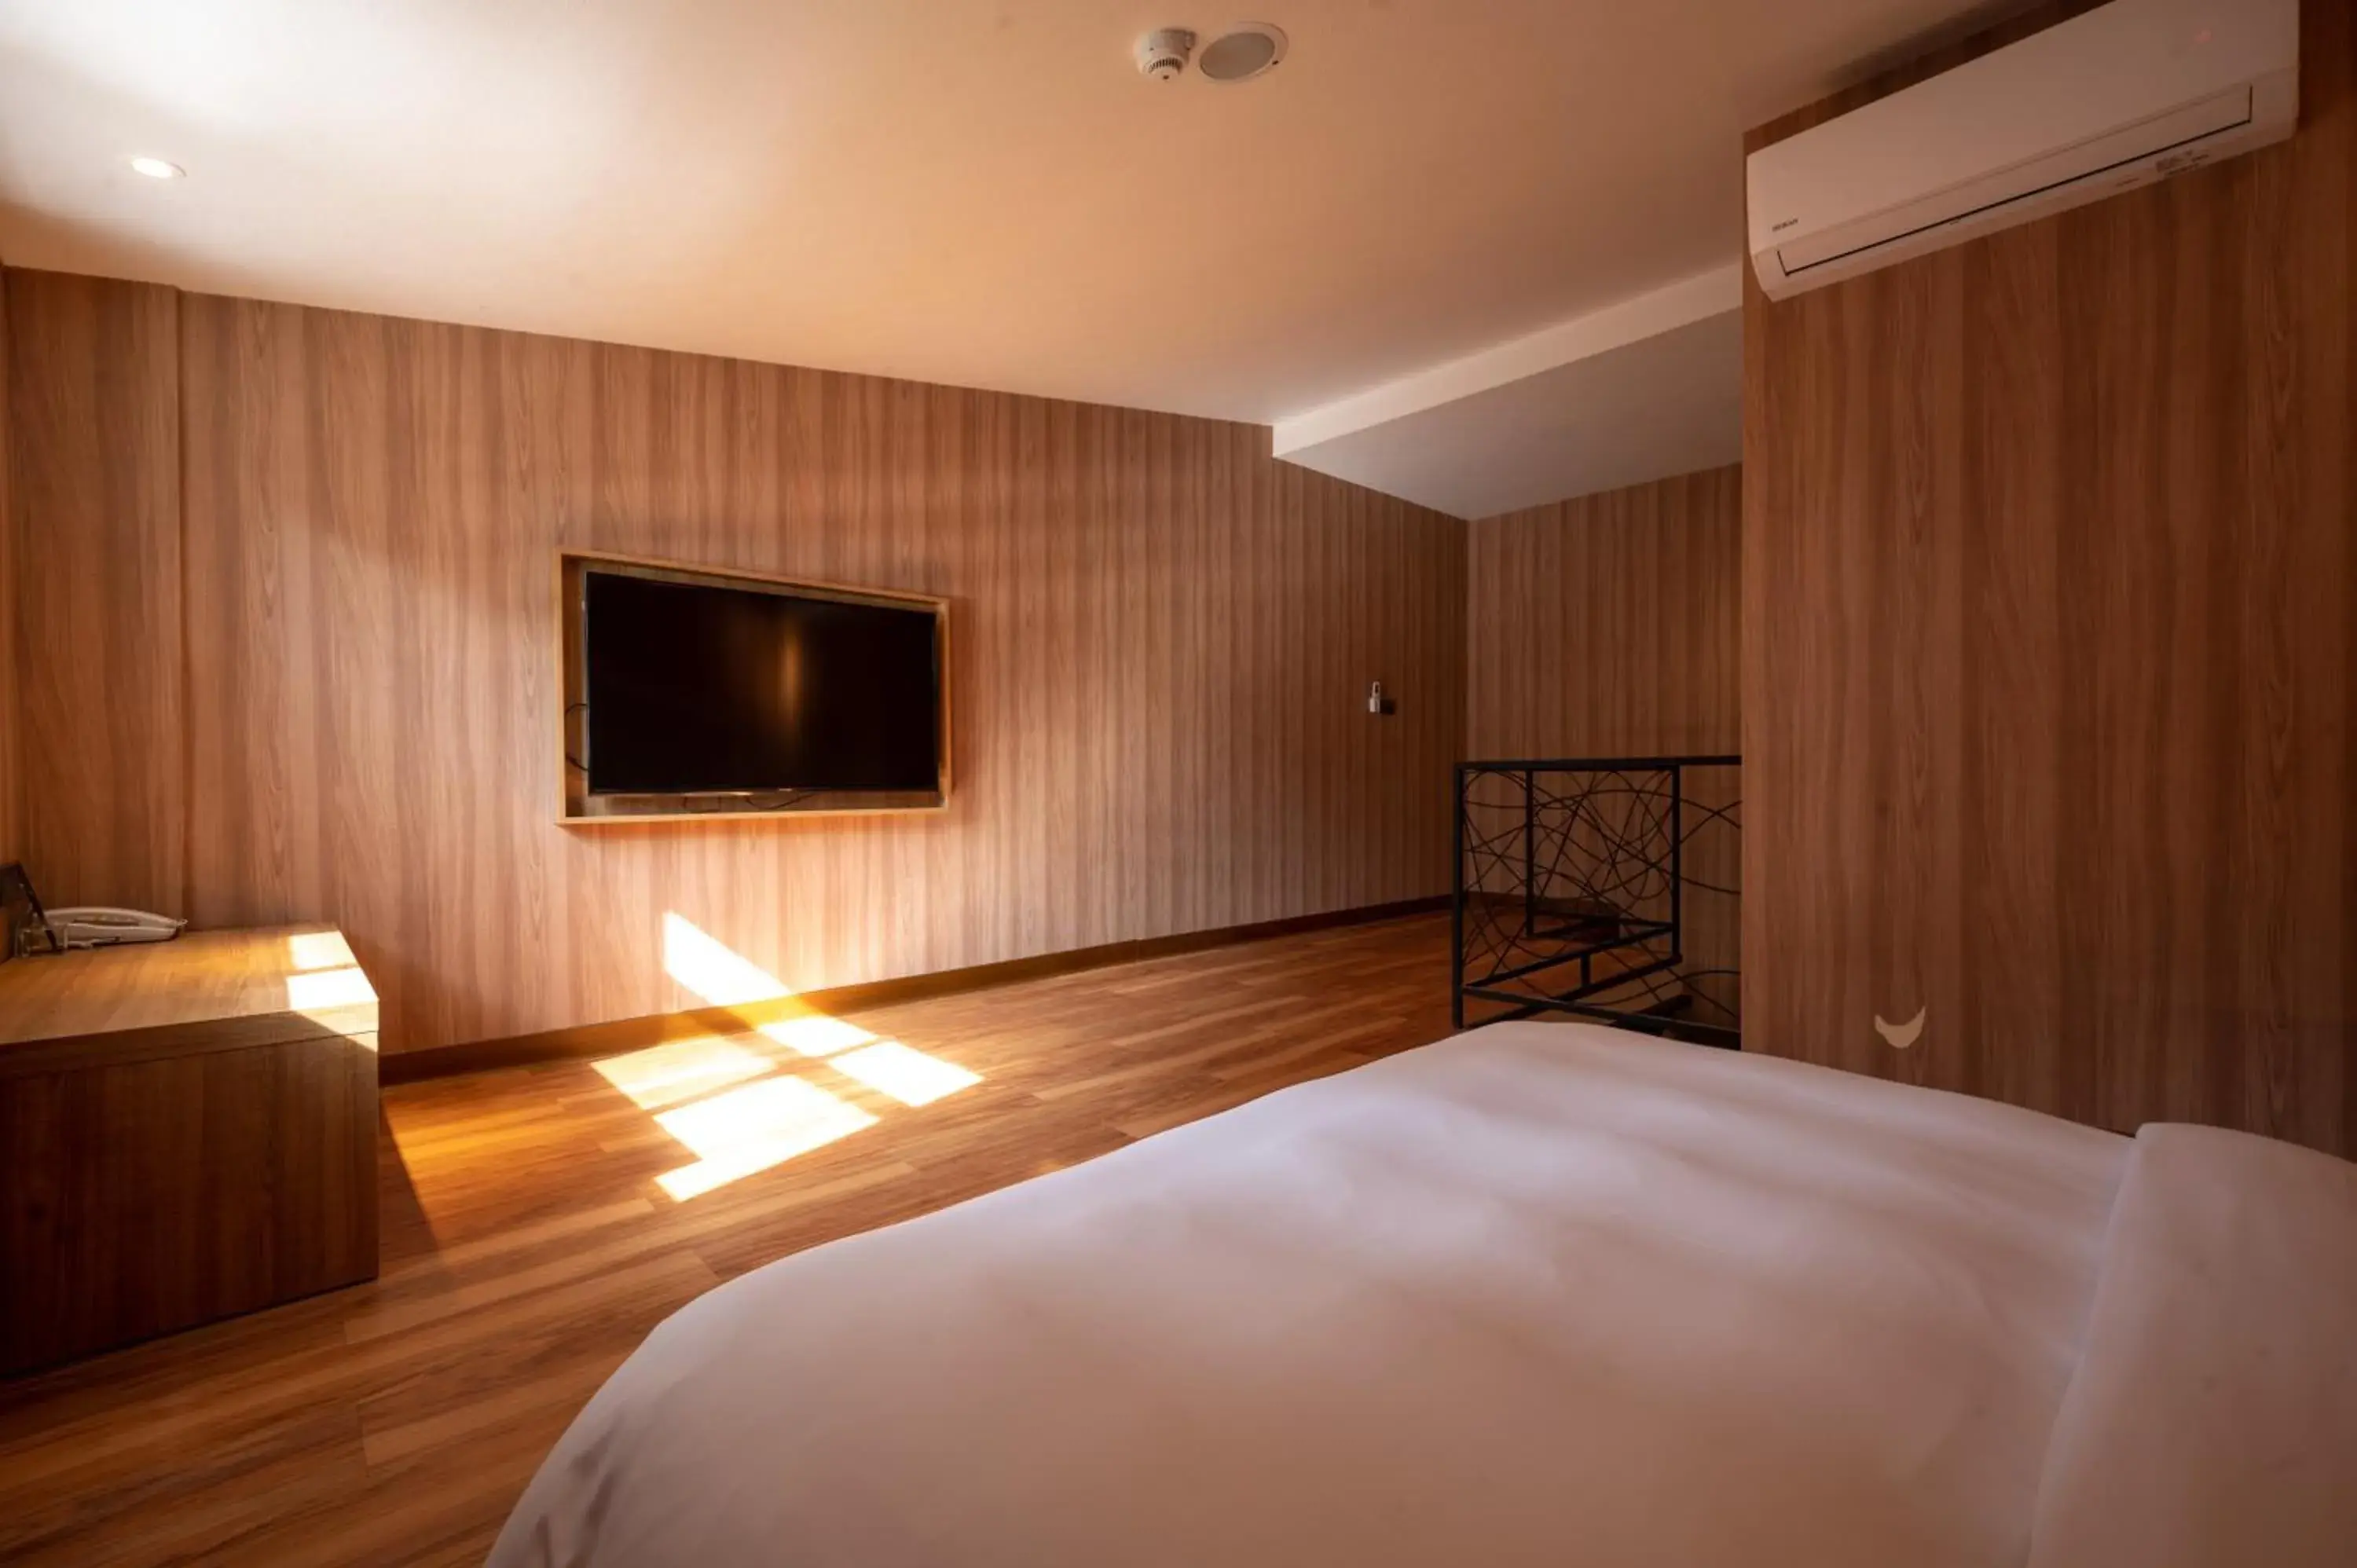 Bedroom, TV/Entertainment Center in Yunoyado Onsen Hotspring Hotel Deyang